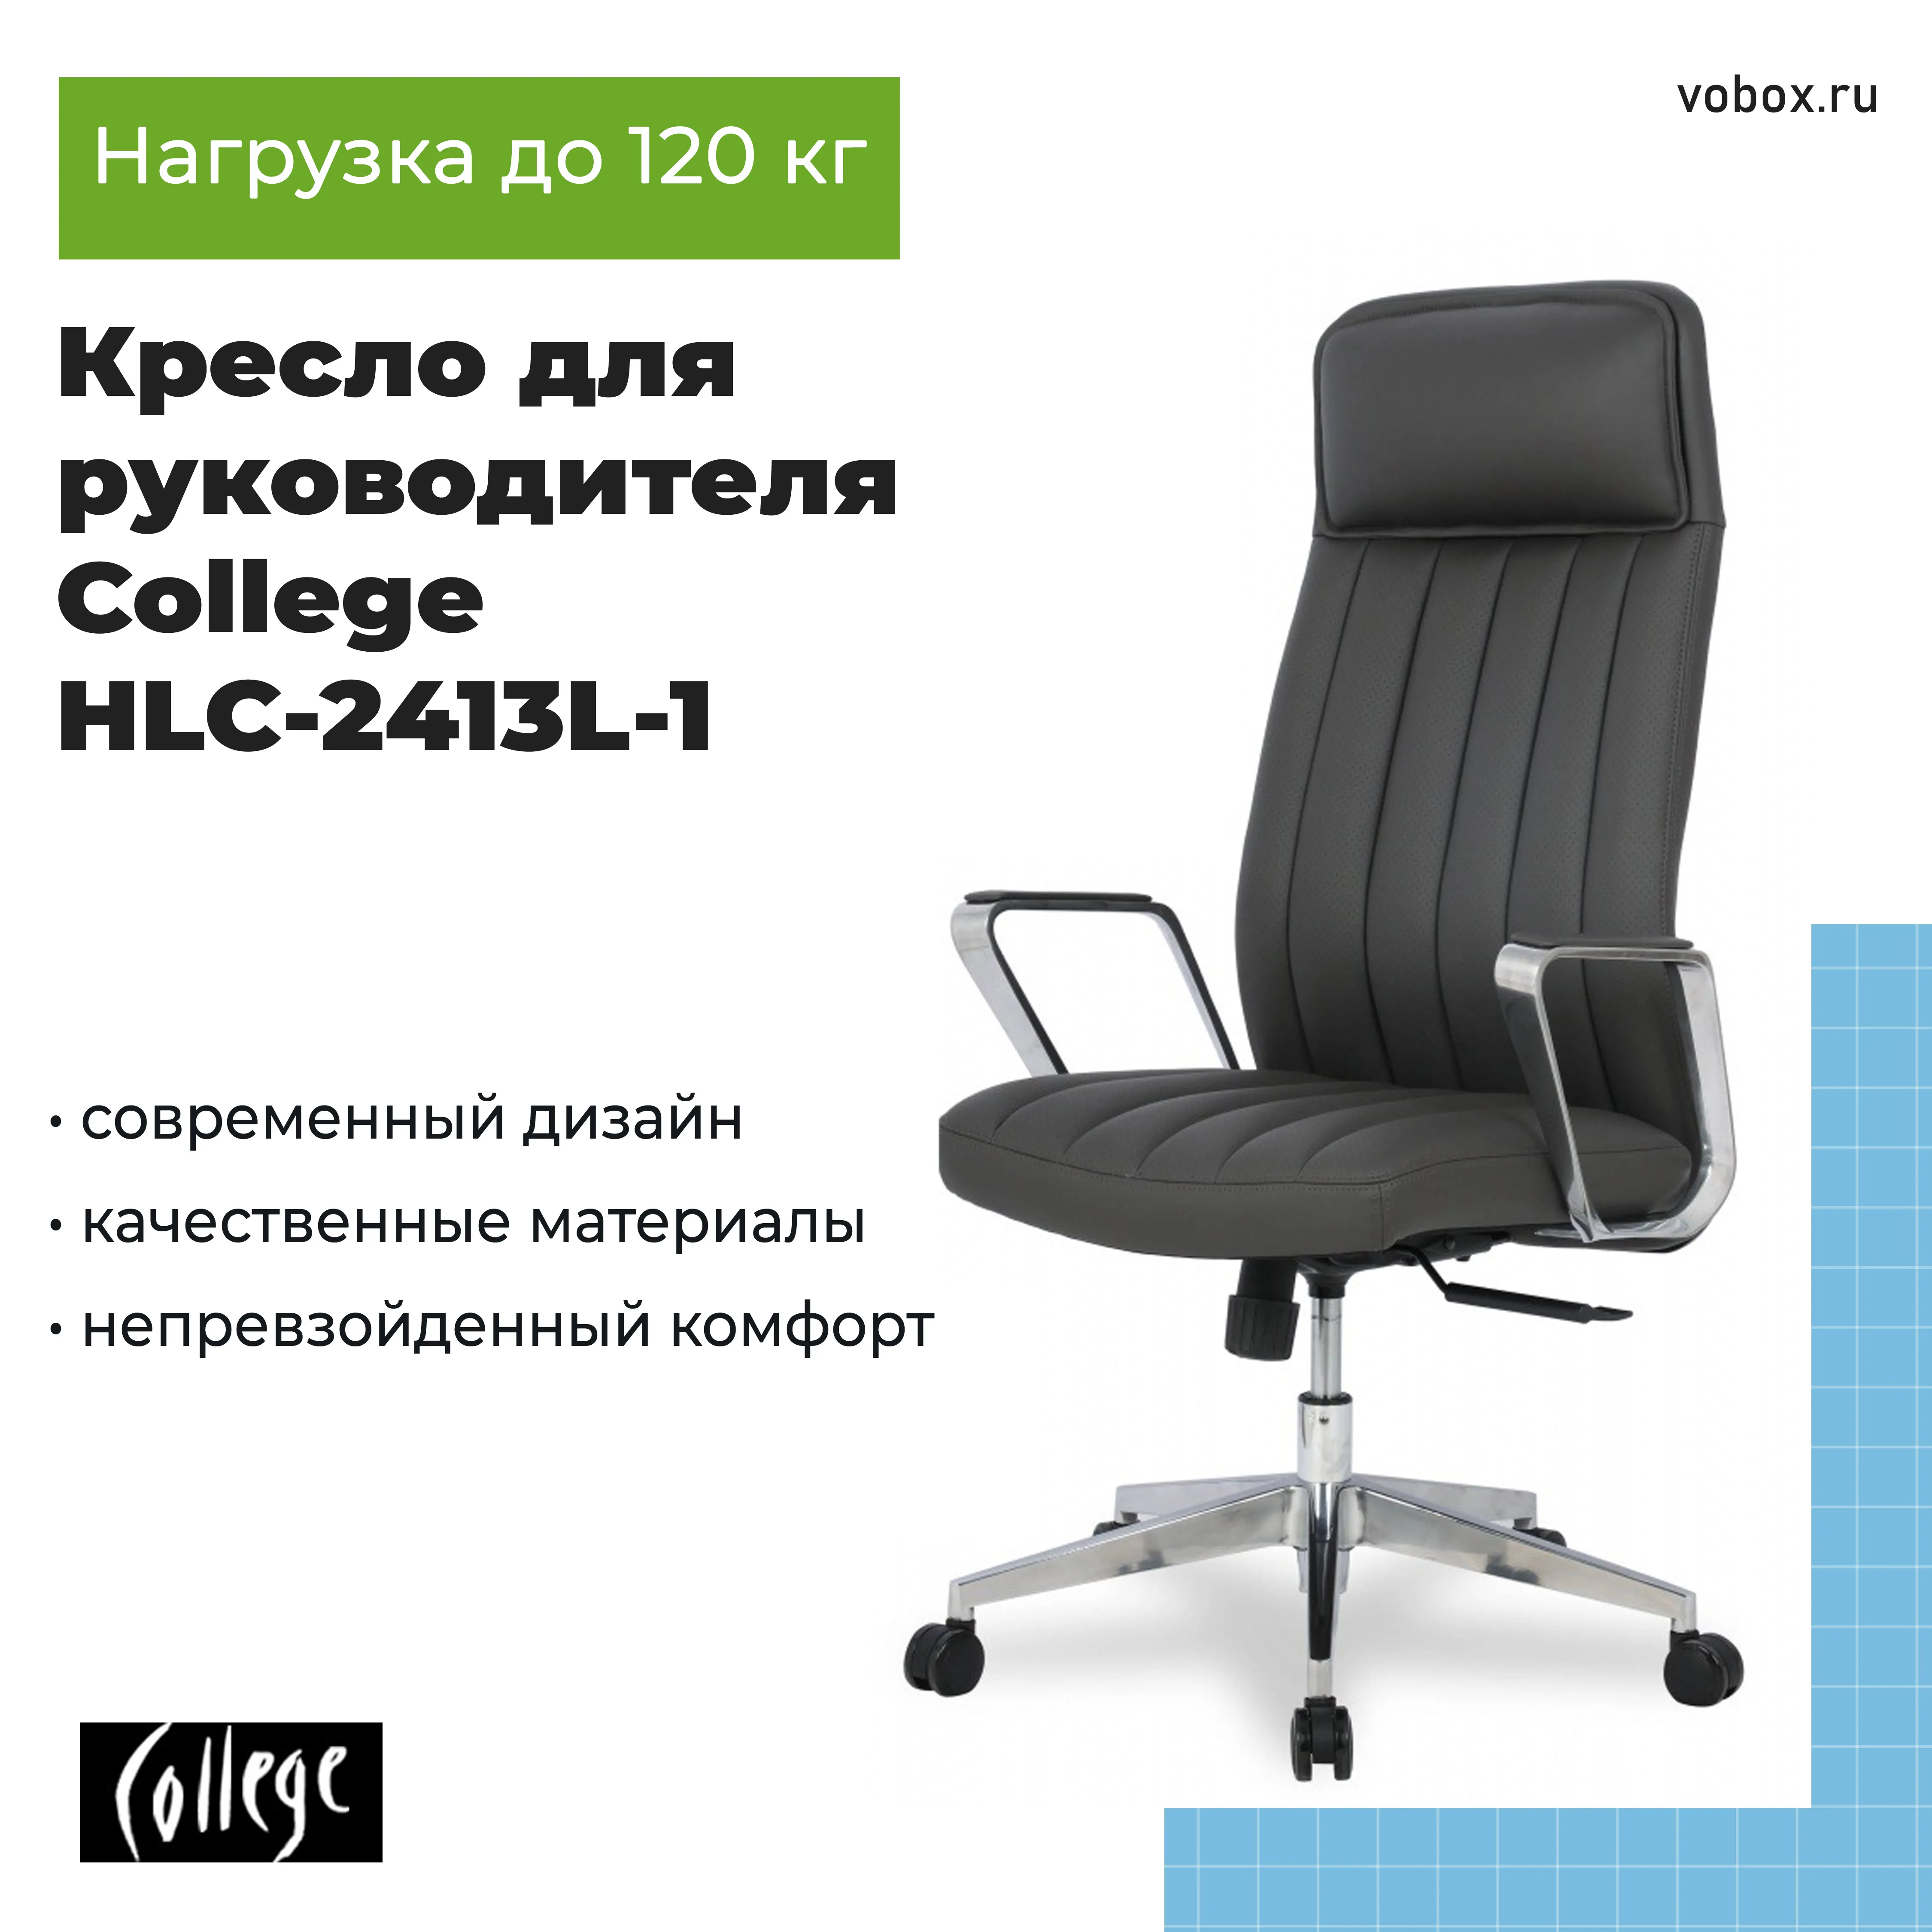 Кресло для руководителя College HLC-2413L-1 Темно-серый